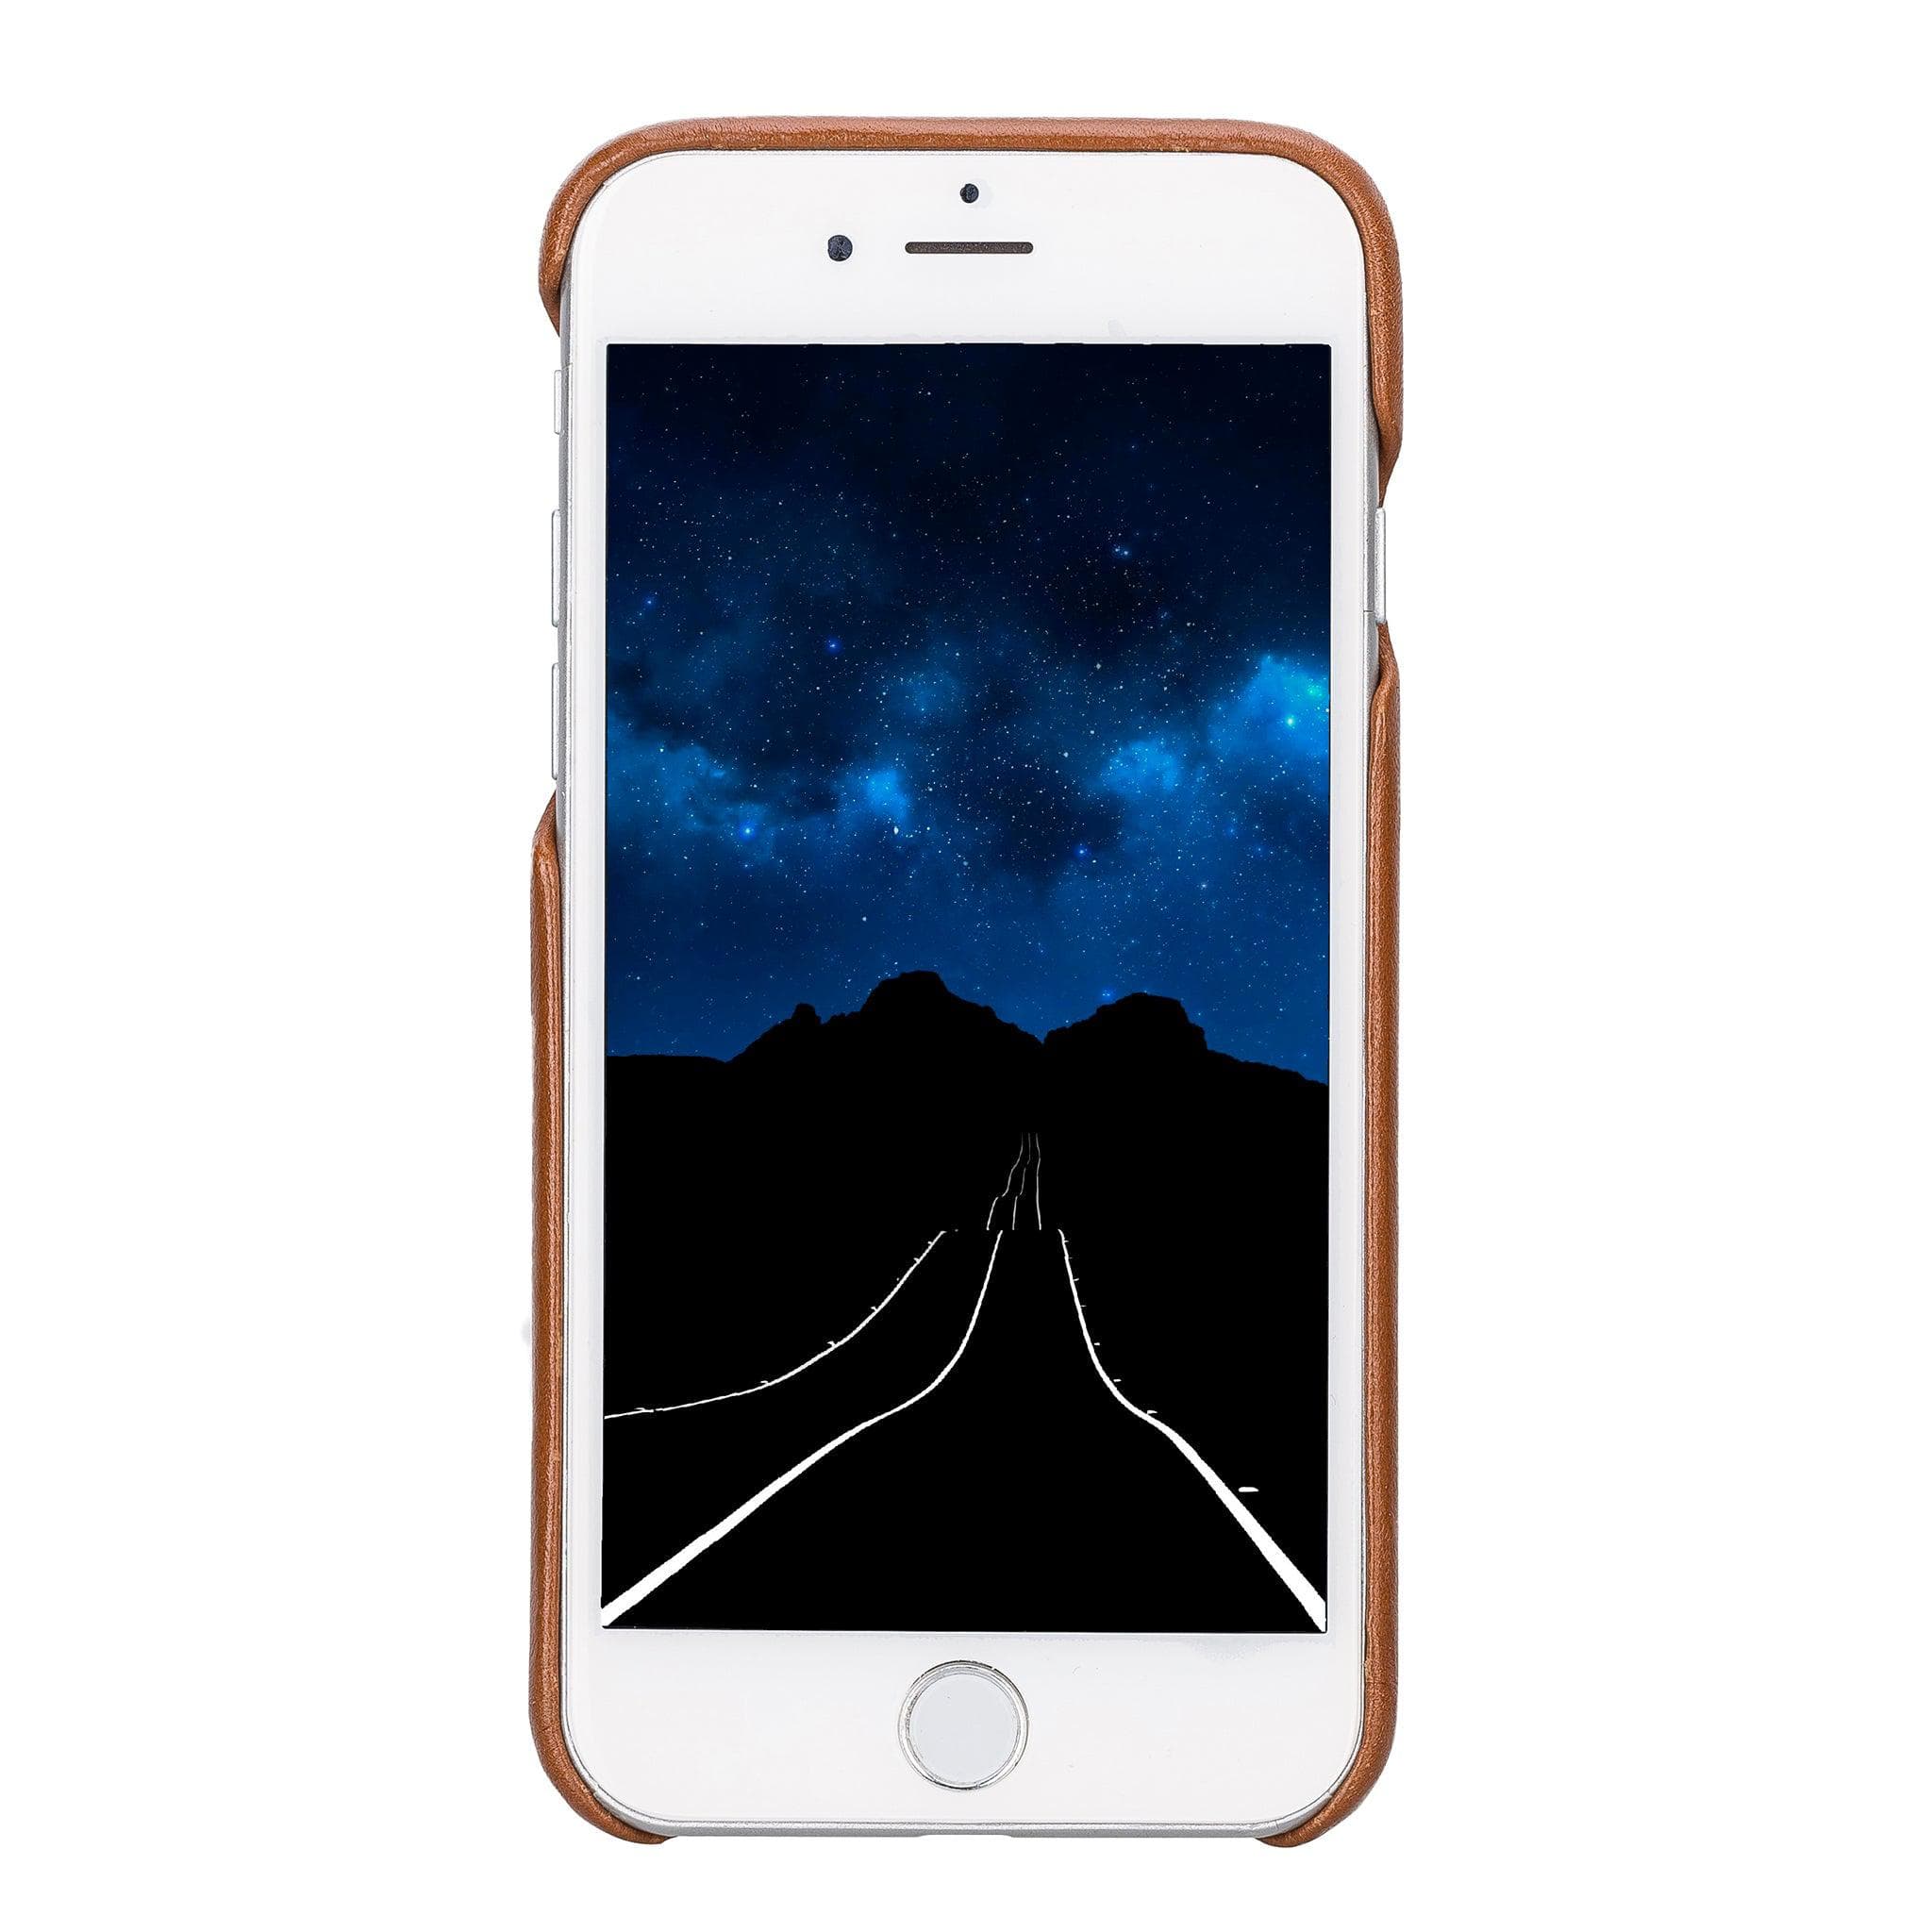 Apple iPhone 7 series Leather Full Cover Case Bornbor LTD